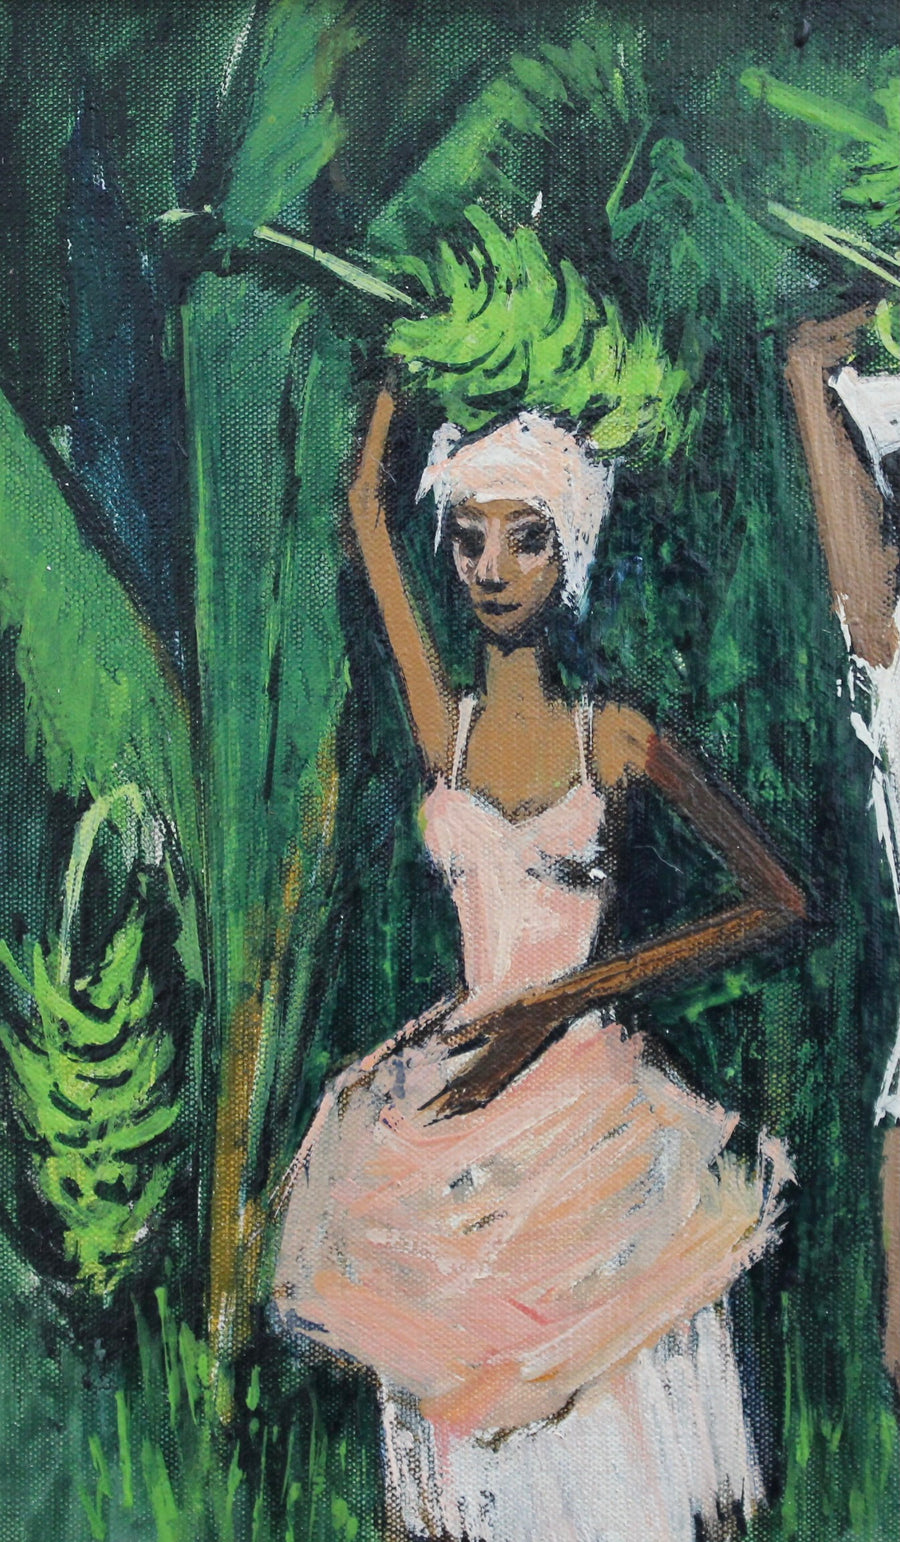 'The Banana Plantation Guadeloupe' by Robert Humblot (1959)